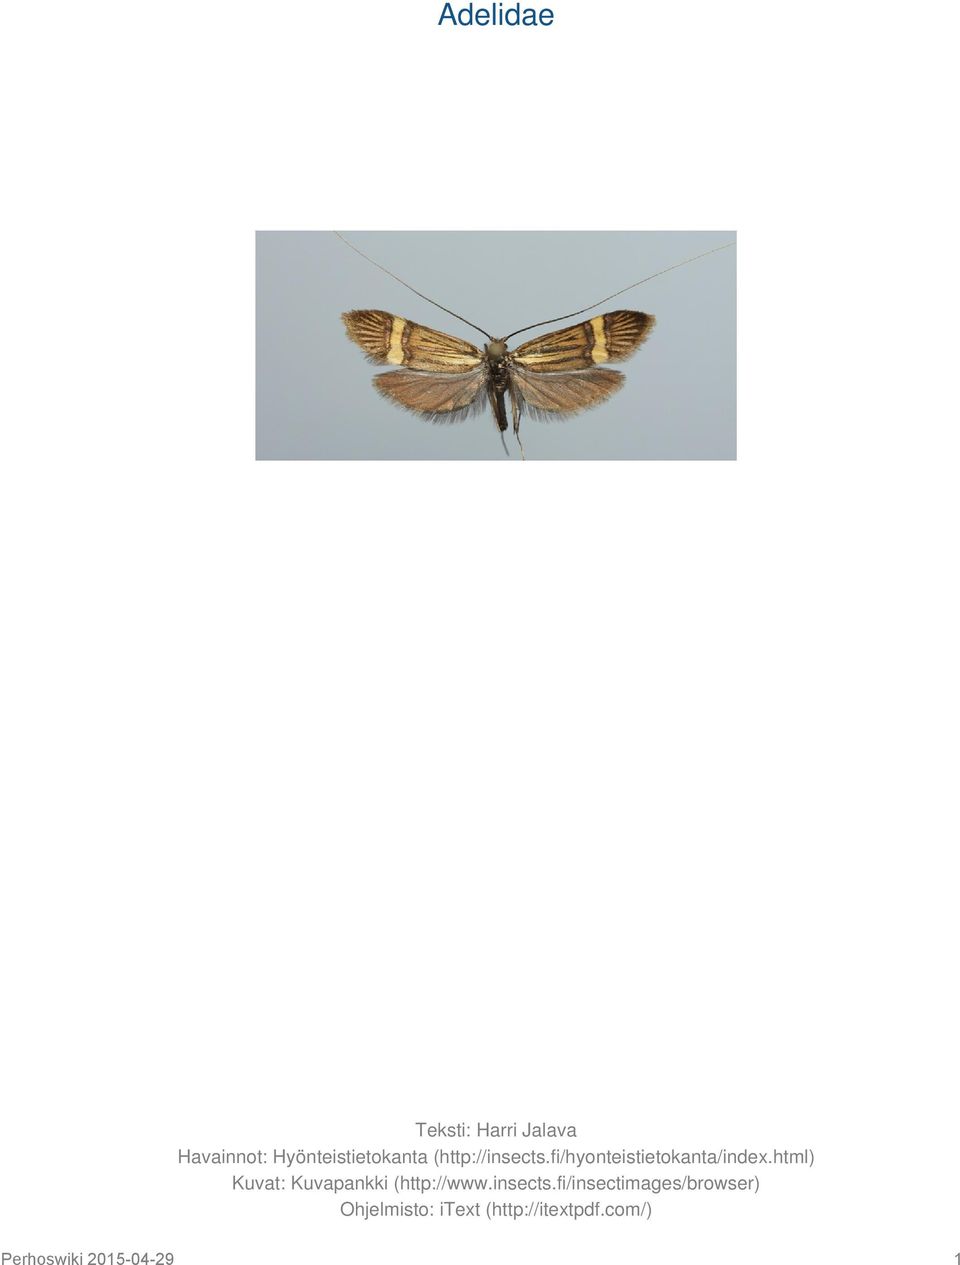 html) Kuvat: Kuvapankki (http://www.insects.